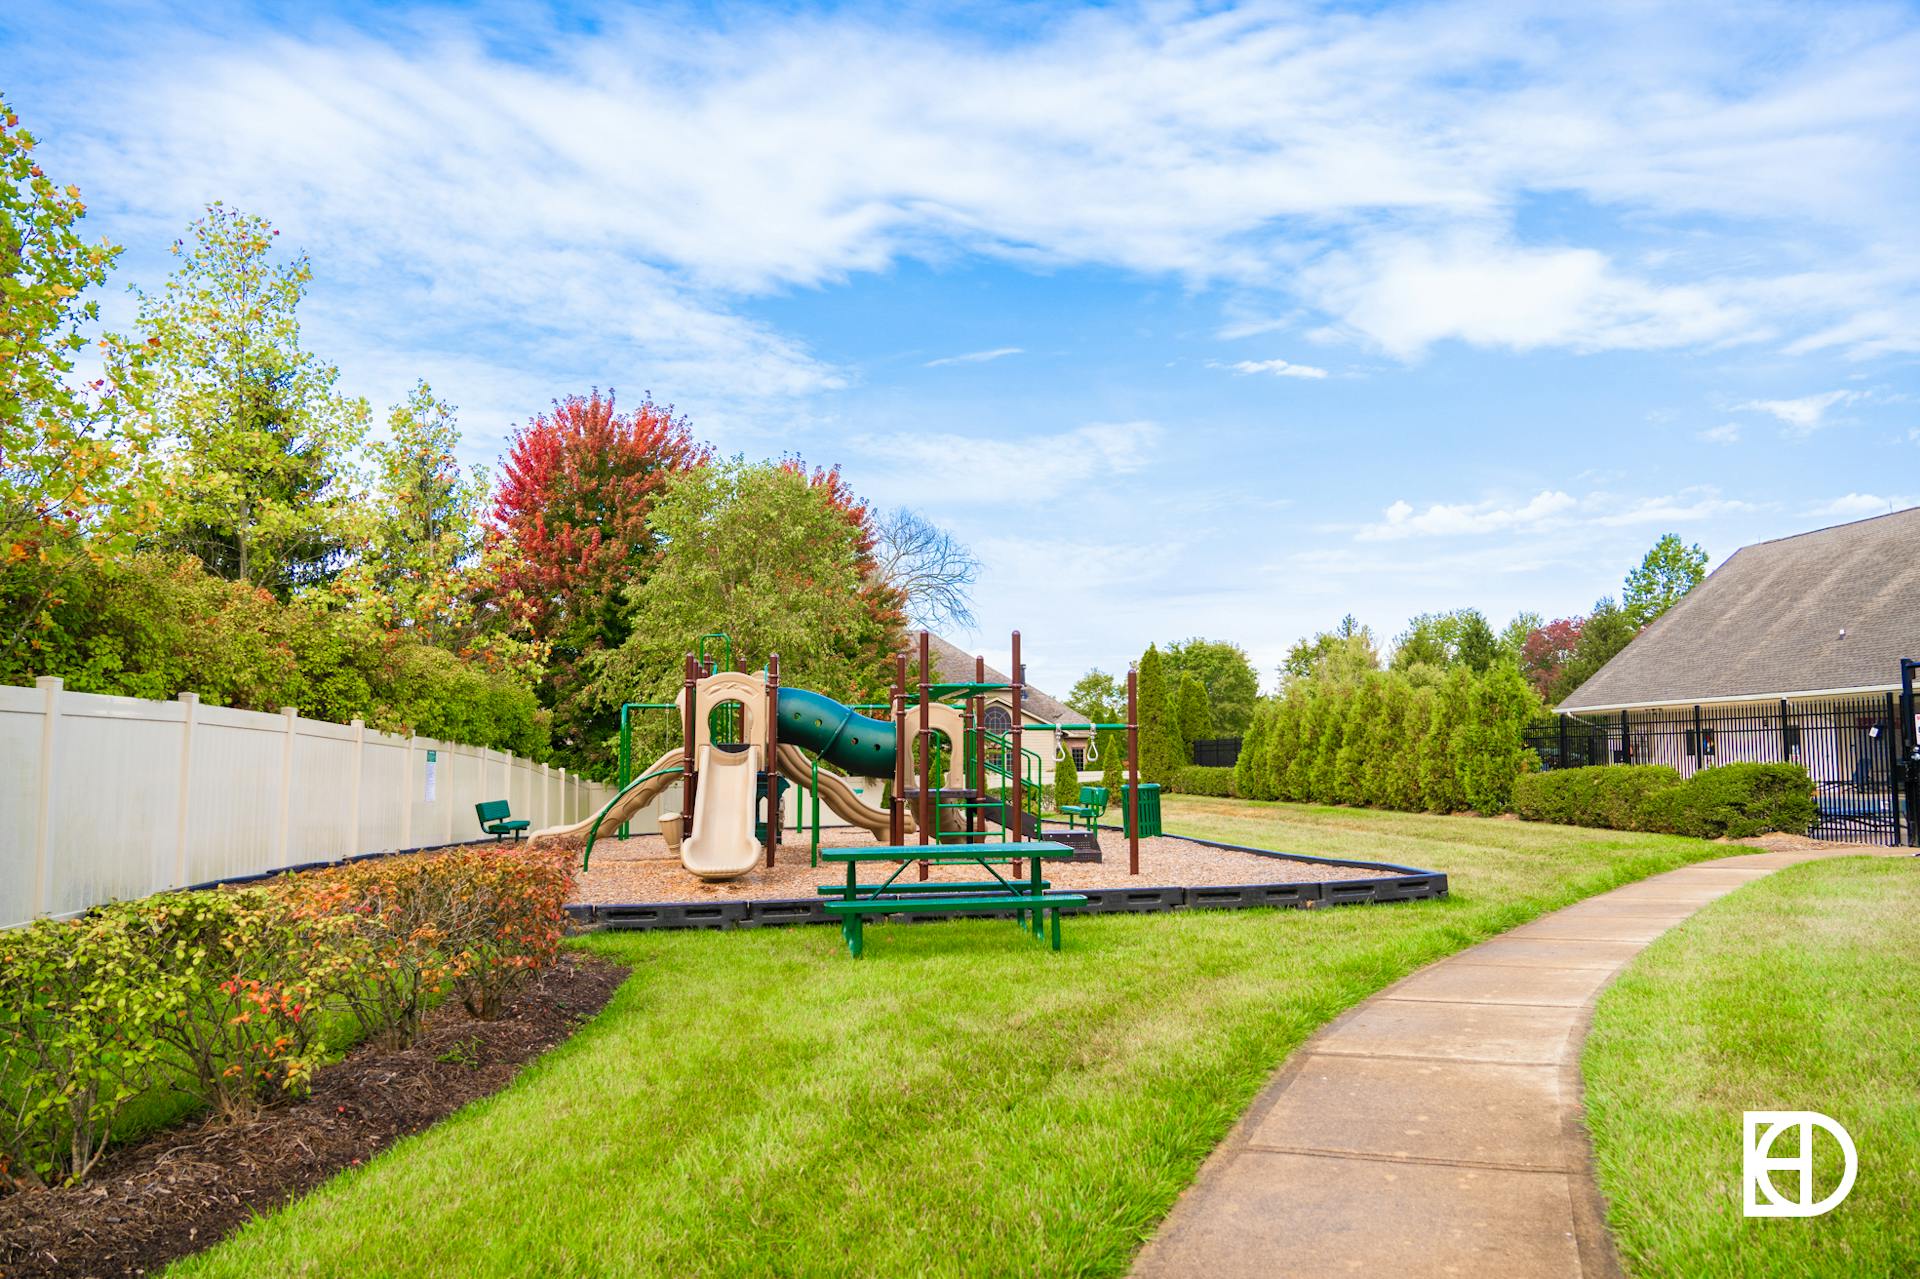 Photo of playground in Austin Oaks neighborhood in Zionsville.